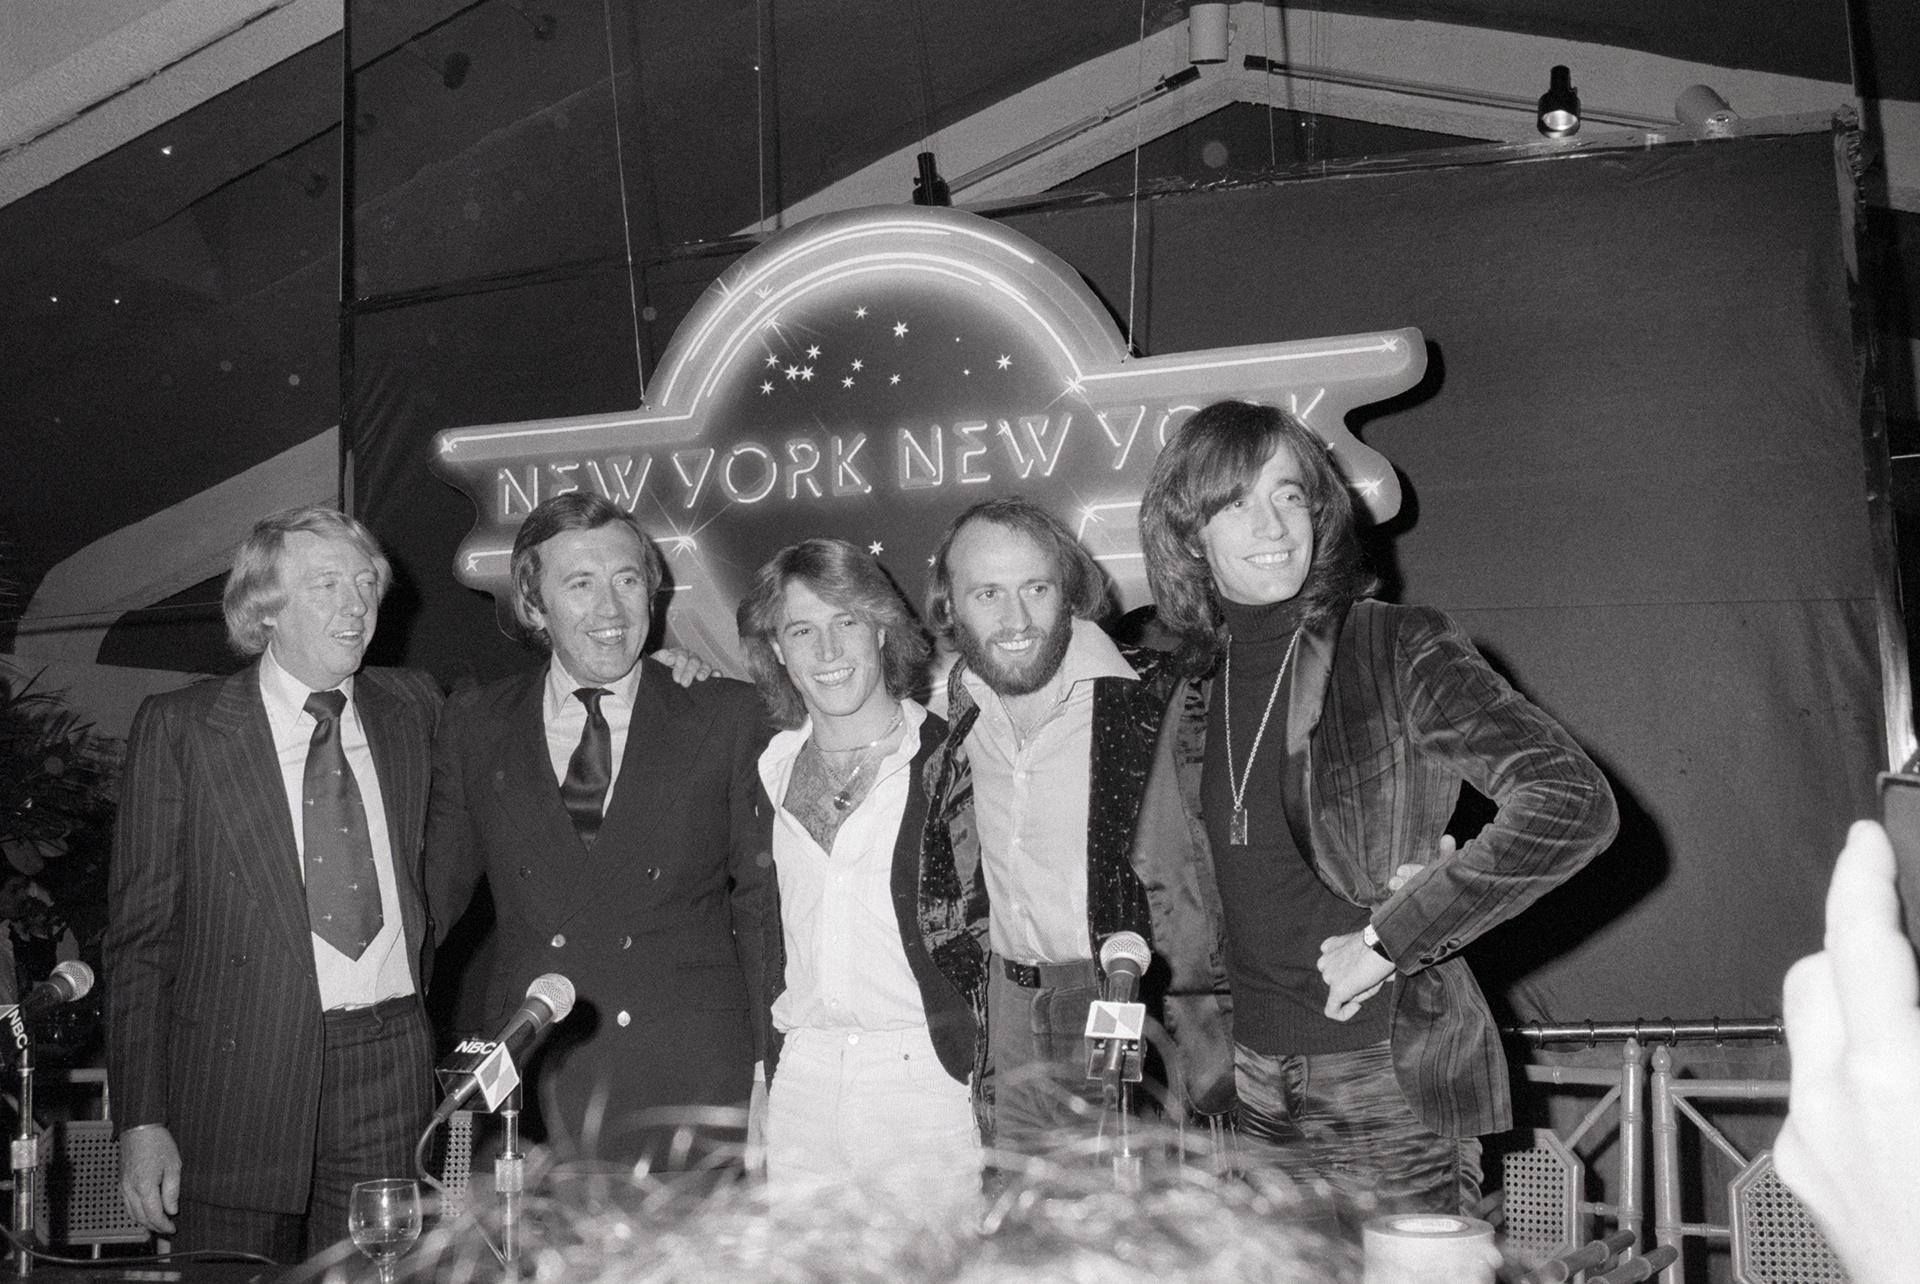 Robert Stigwood, David Frost, y tres de los hermanos Gibb: Andy, Maurice y Robin en el restaurante del Club New York 